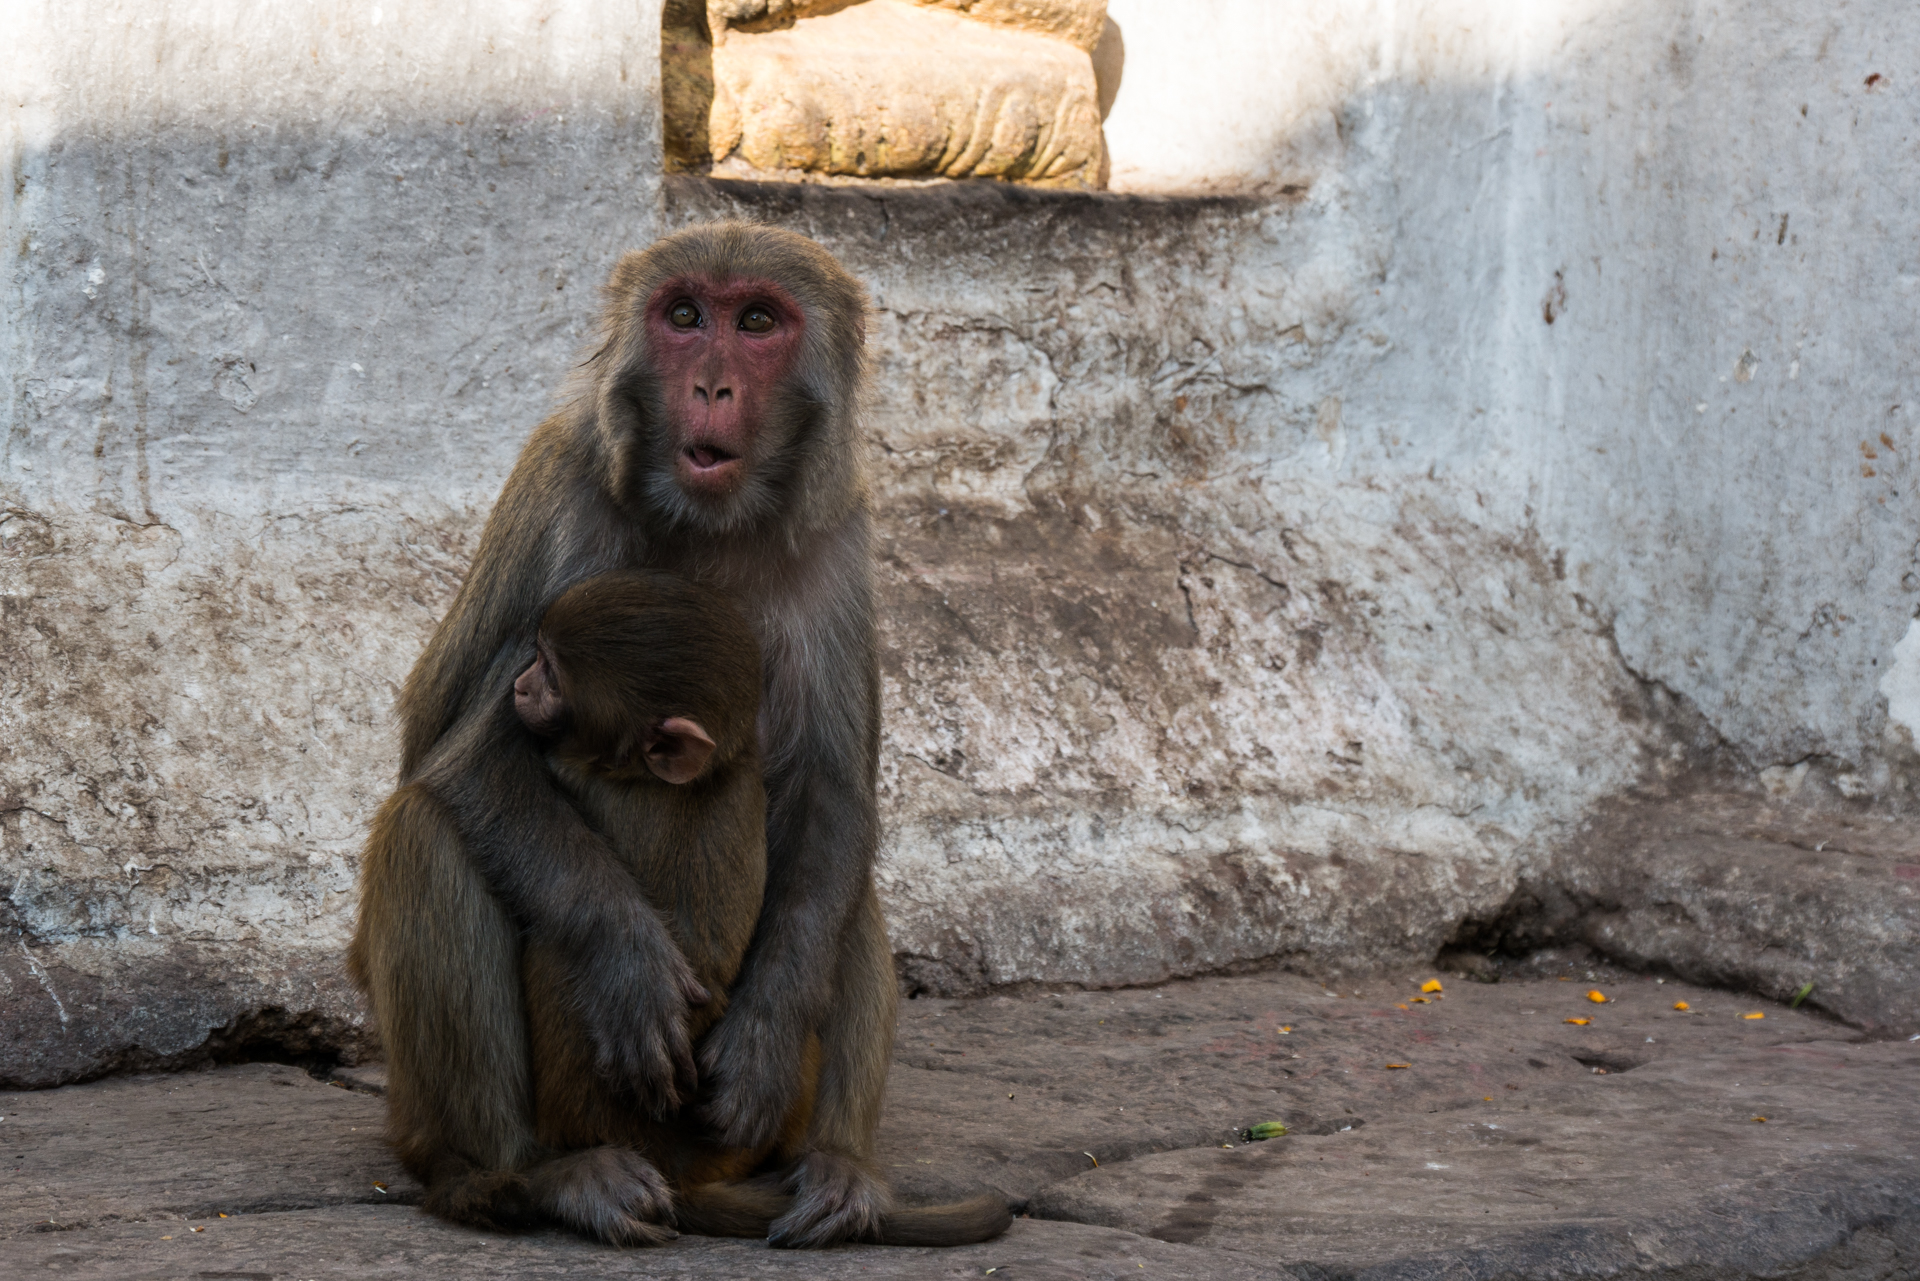 Des centaines de singes habitent les lieux - La vallée de Kathmandu